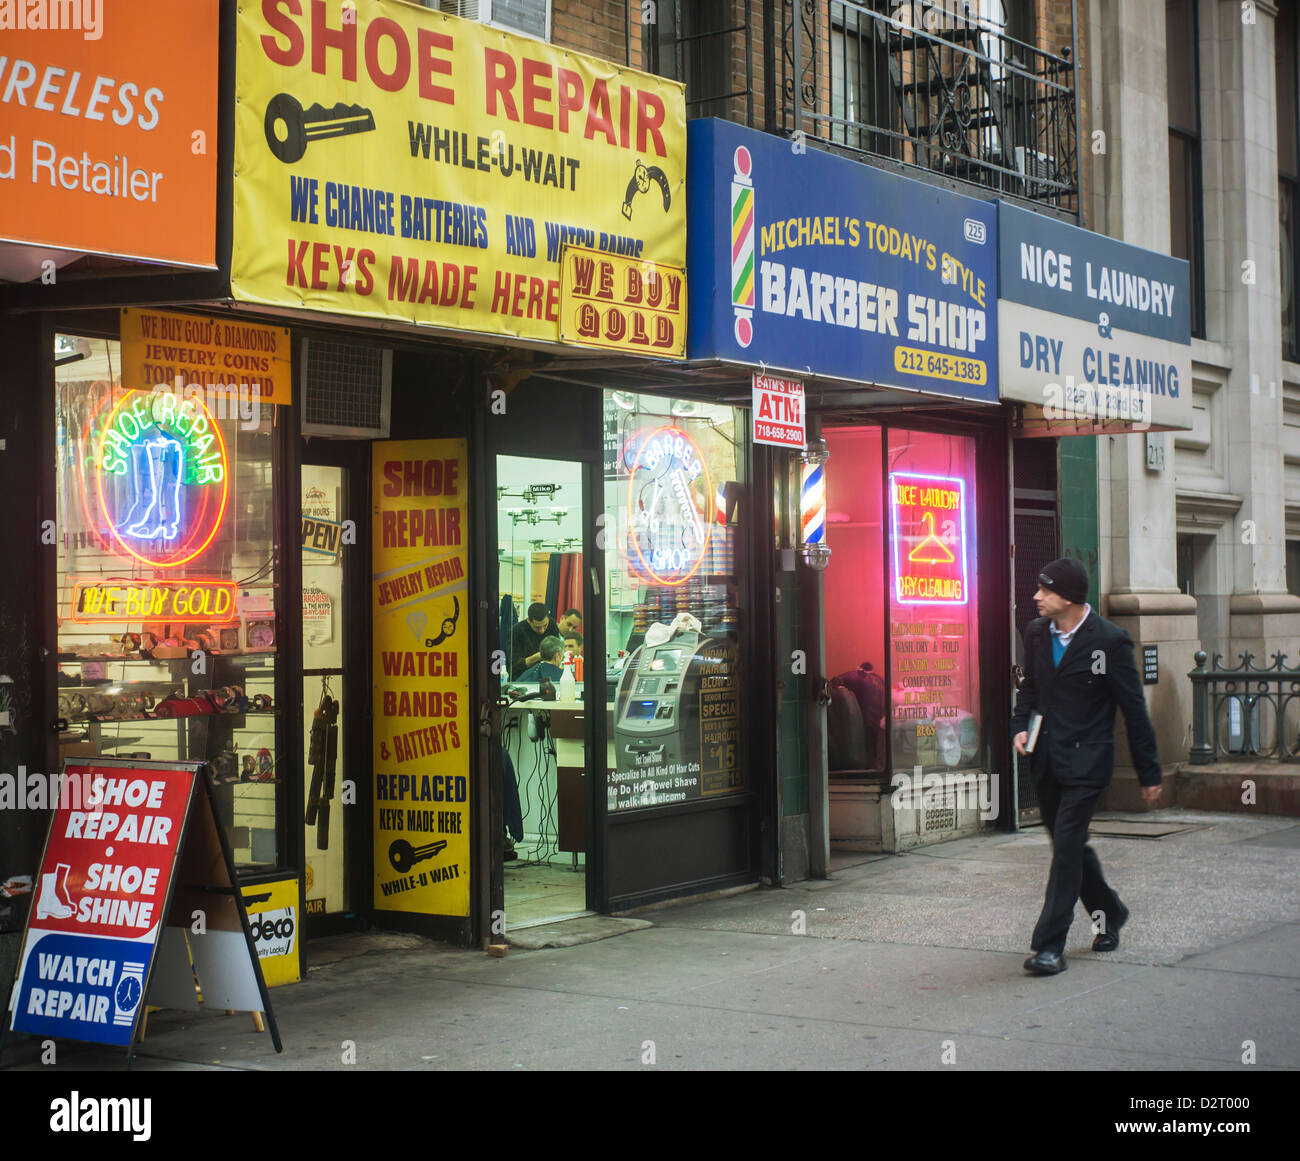 Mom und Pop Kleinunternehmen, eine Schuhreparatur, einen Friseur und eine Wäscherei, im New Yorker Stadtteil Chelsea Stockfoto